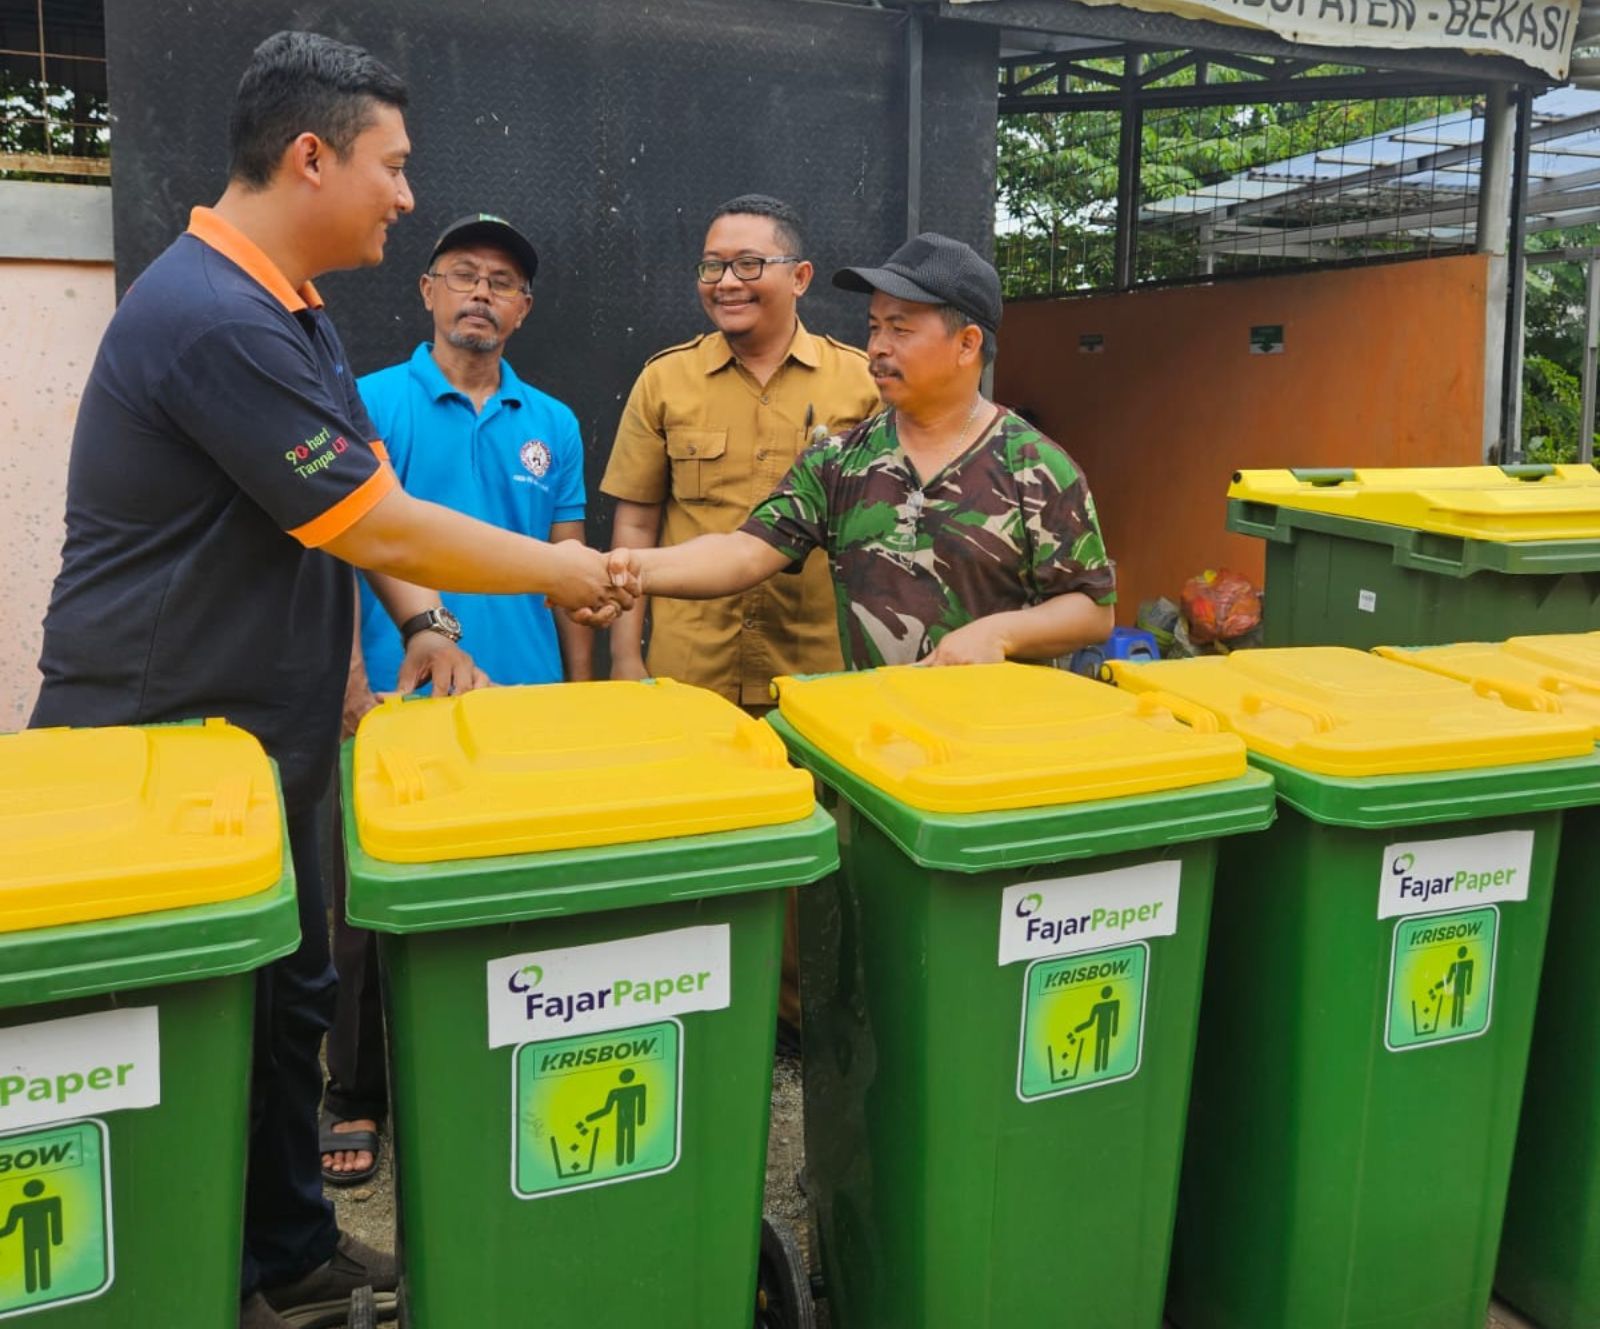 Fajar Paper Serahkan 190 Unit Tempat Sampah ke 10 Desa di Kabupaten Bekasi, Dukung Program Kampung Iklim - Desapedia